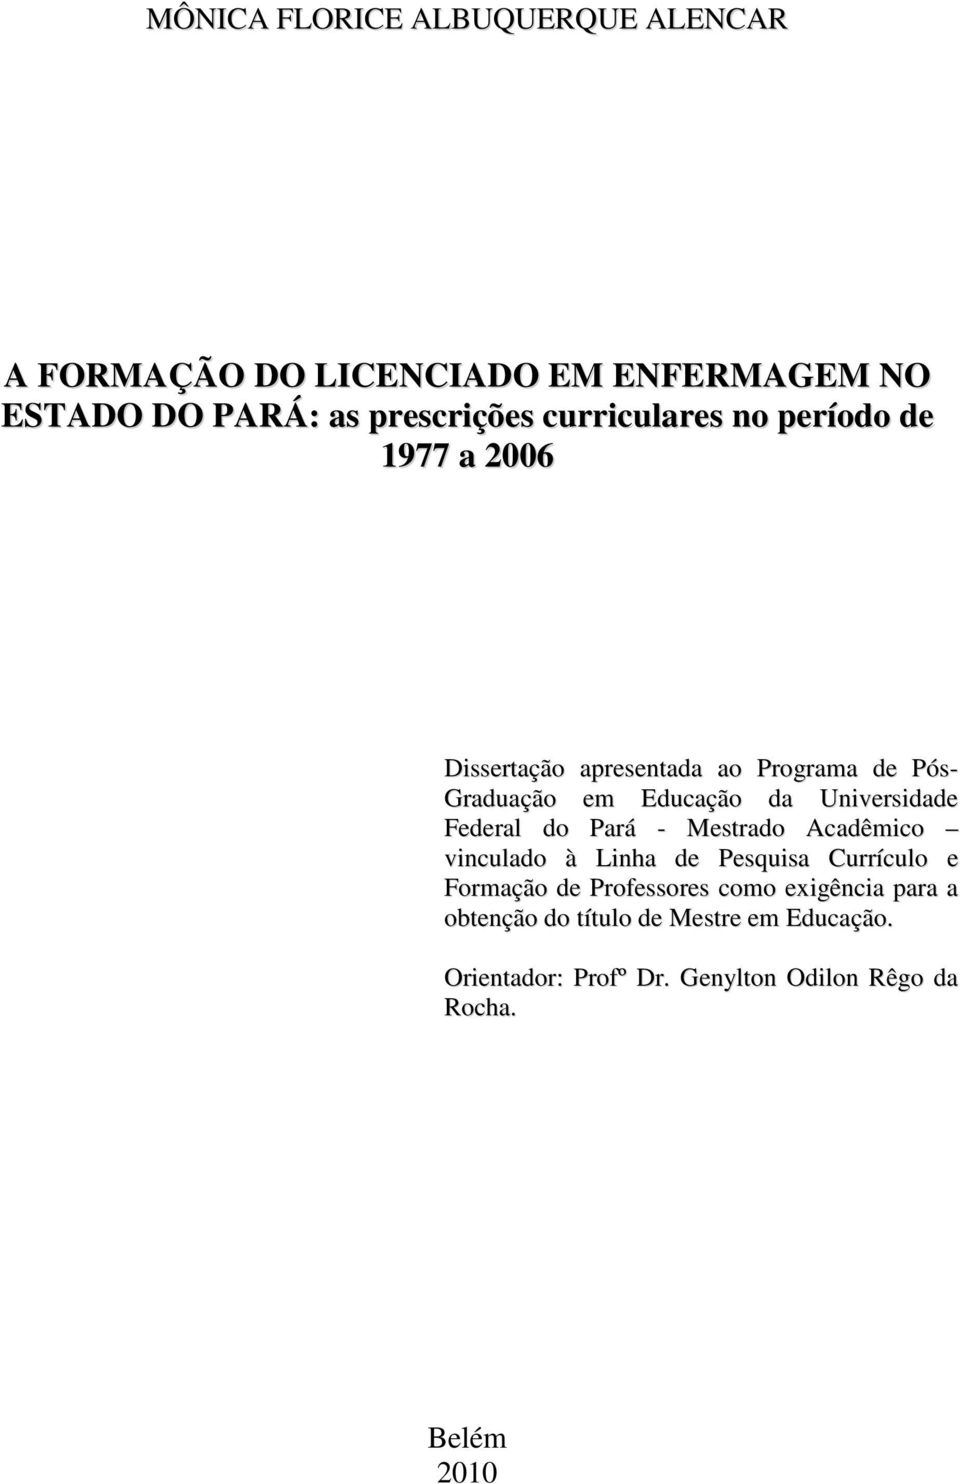 Universidade Federal do Pará - Mestrado Acadêmico vinculado à Linha de Pesquisa Currículo e Formação de